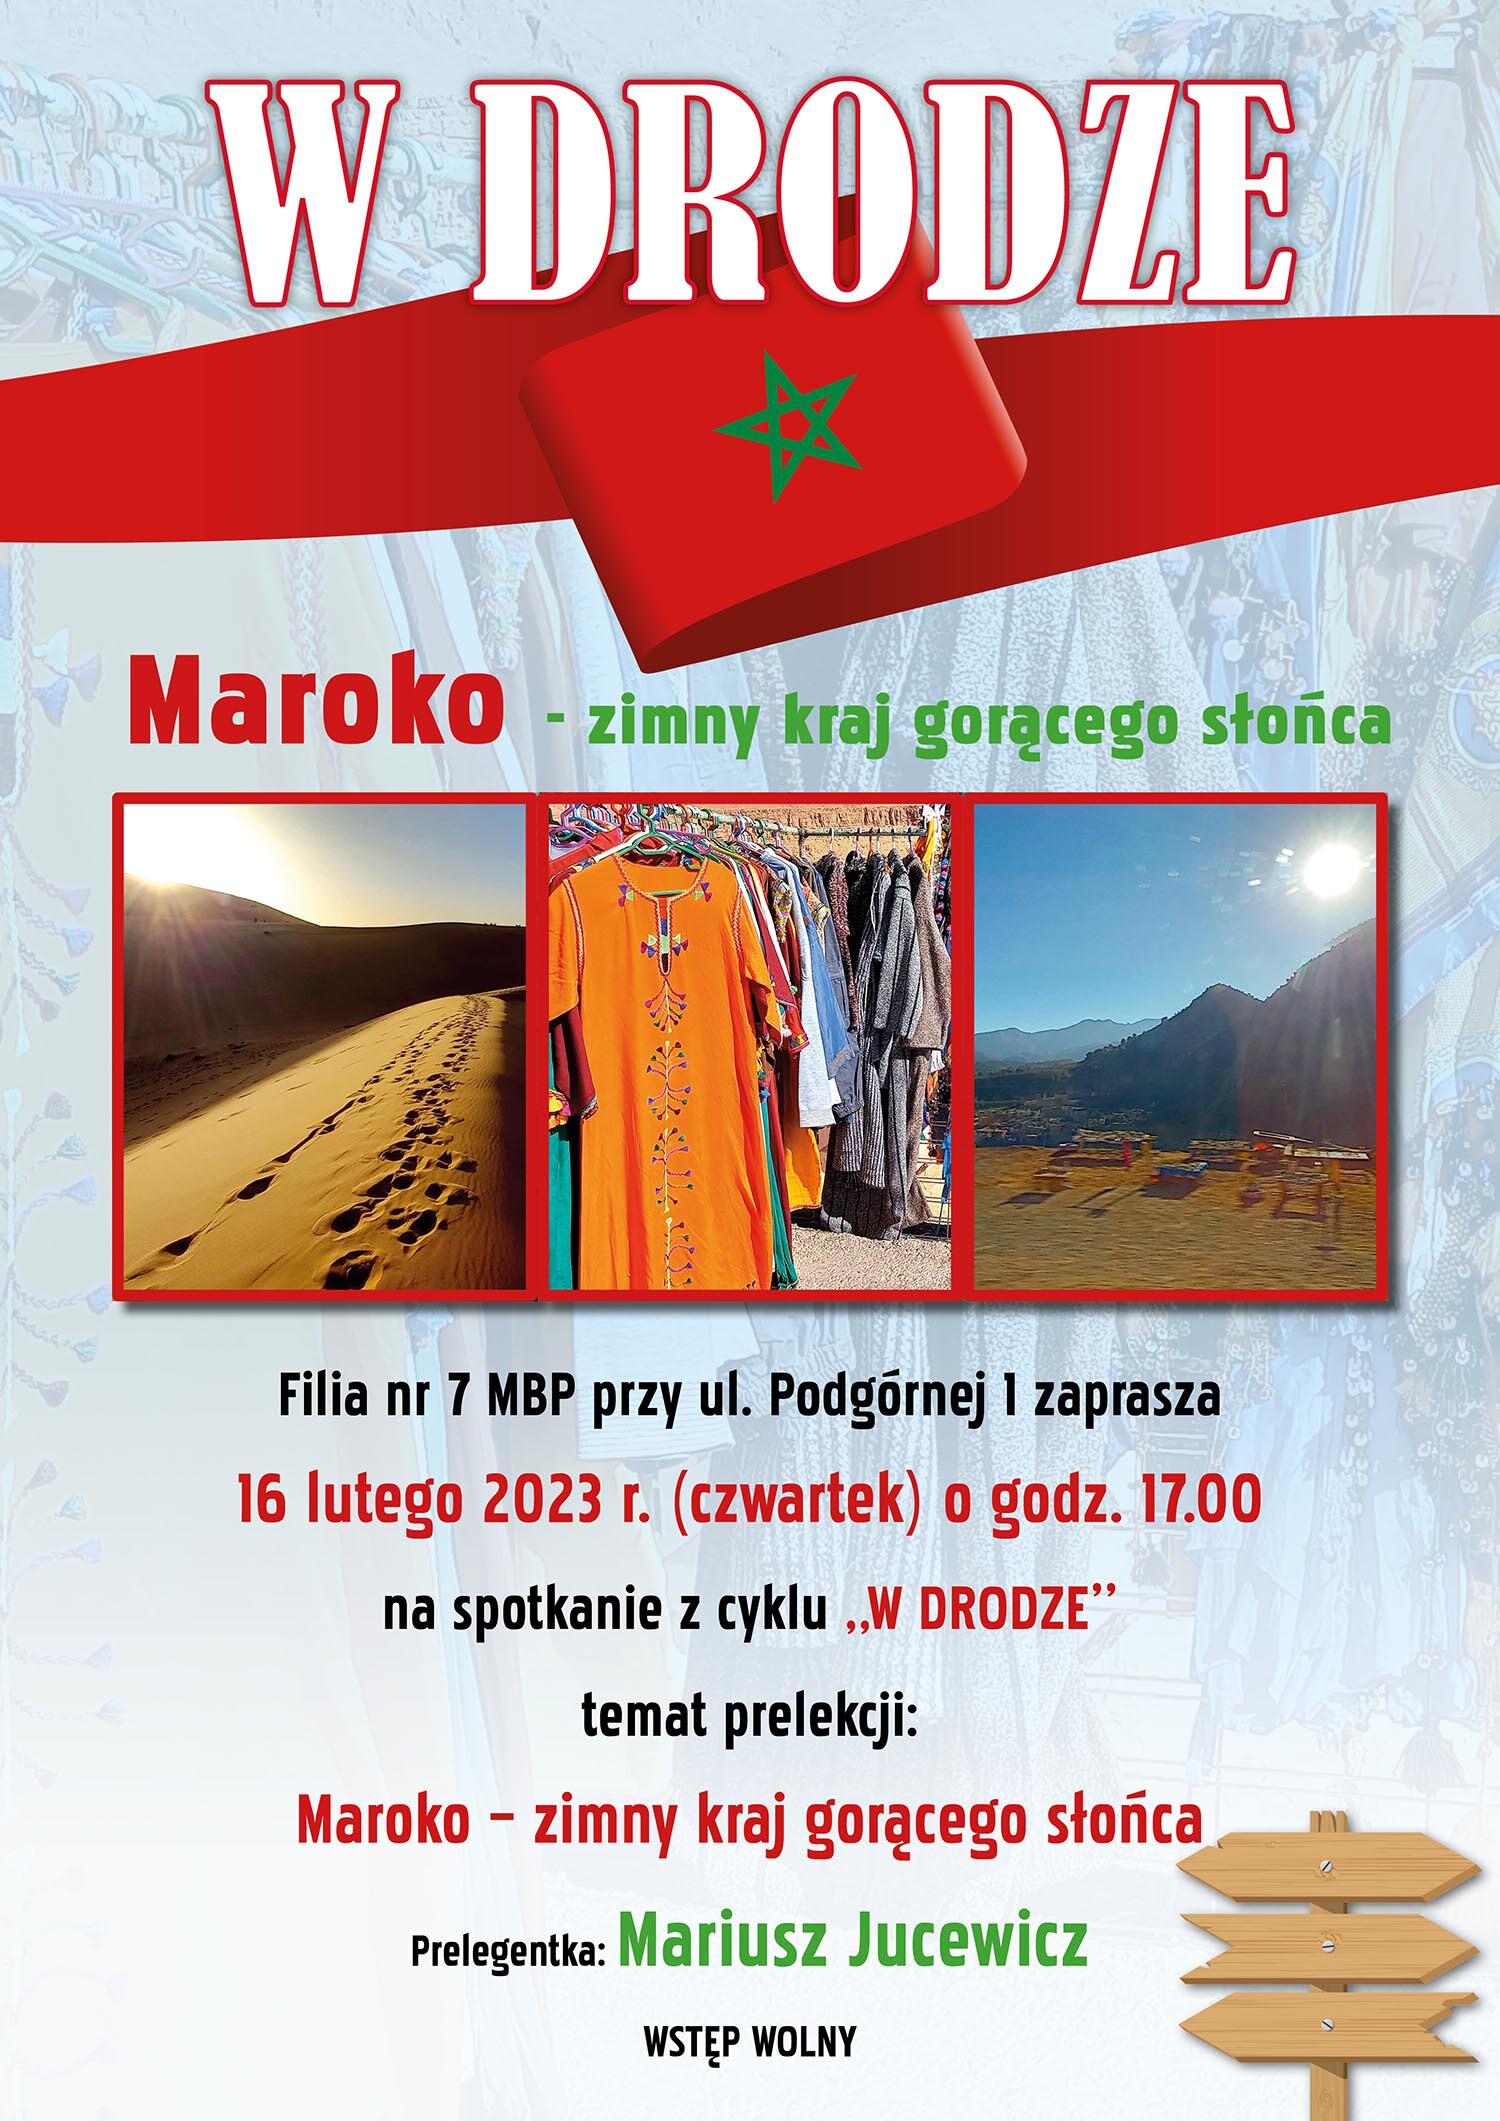 Plakat informujący o spotkaniu W DRODZE: Maroko - zimy kraj gorącego słońca